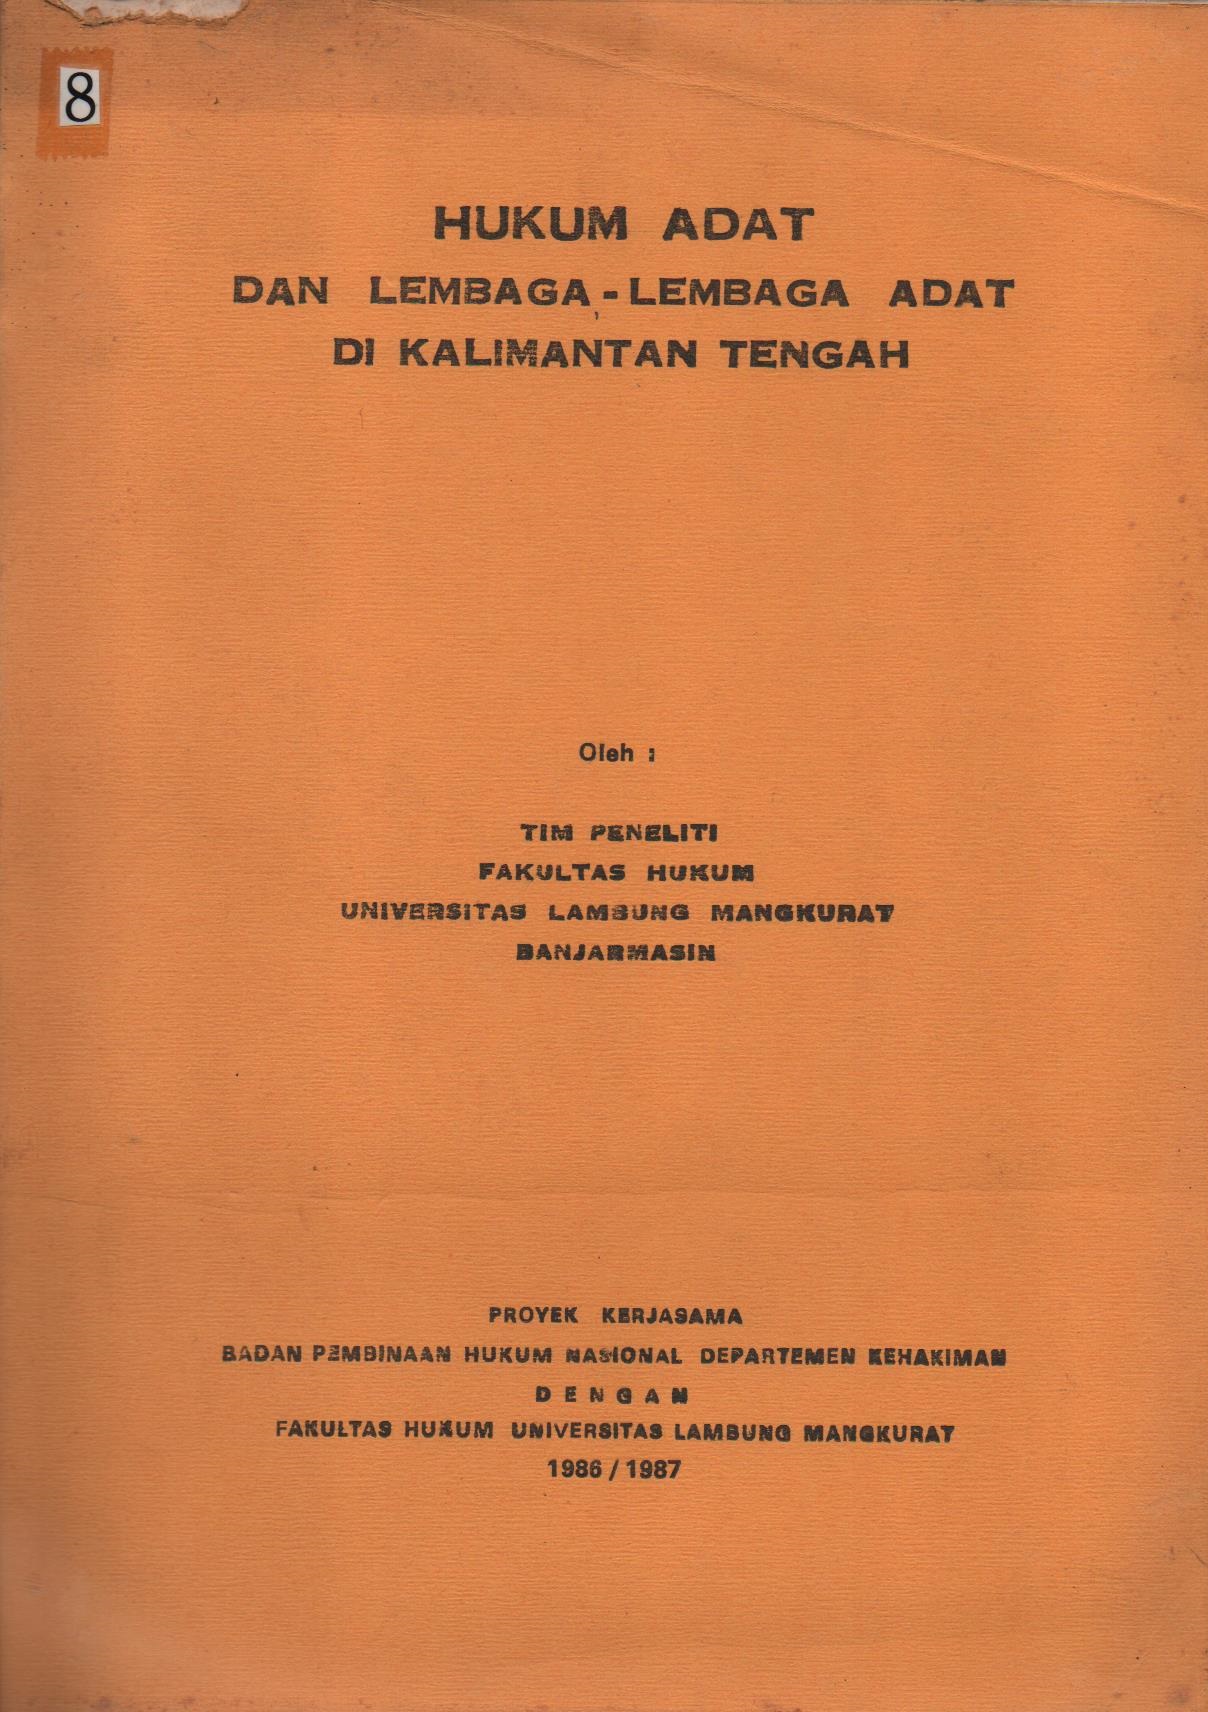 Hukum Adat Dan Lembaga - Lembaga Adat Di Kalimantan Tengah